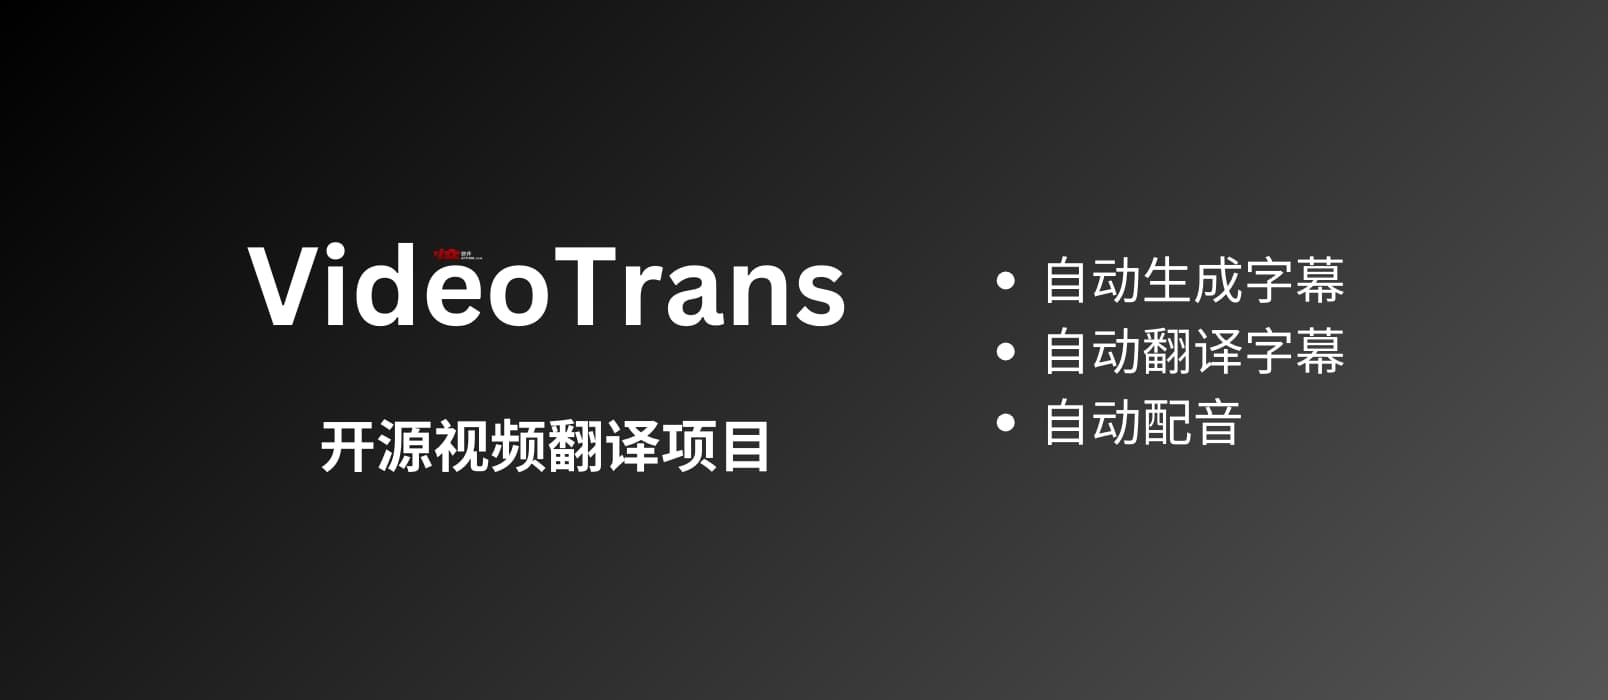 VideoTrans - 开源视频翻译项目：自动识别并生成字幕后，翻译 + 配音